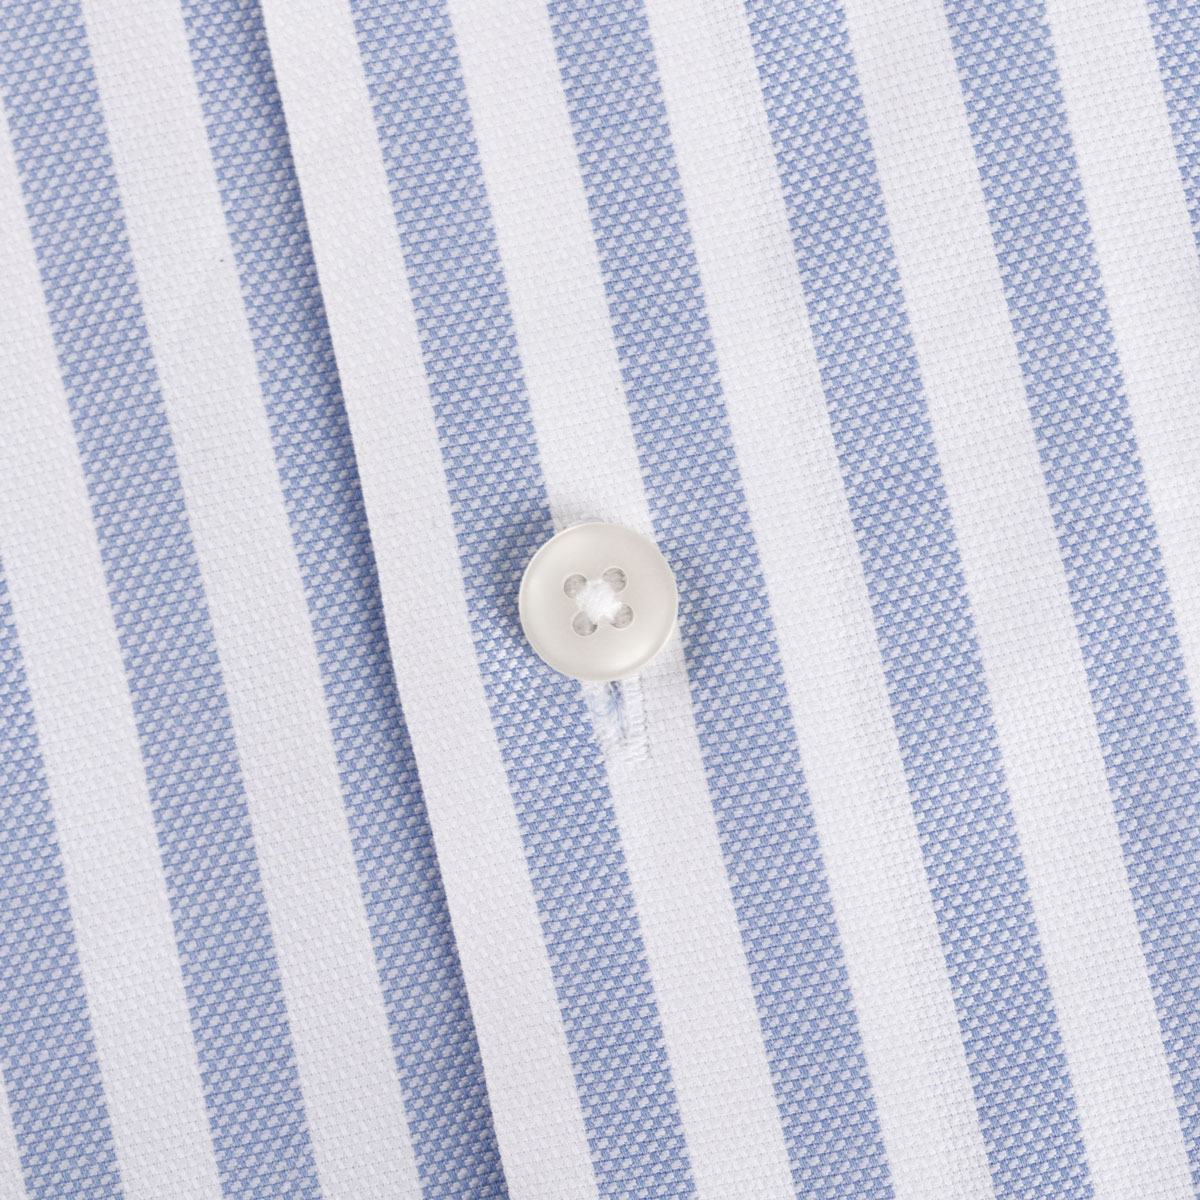 Slim Fit Hemd aus Baumwolle/Elasthan in hellblau gestreift